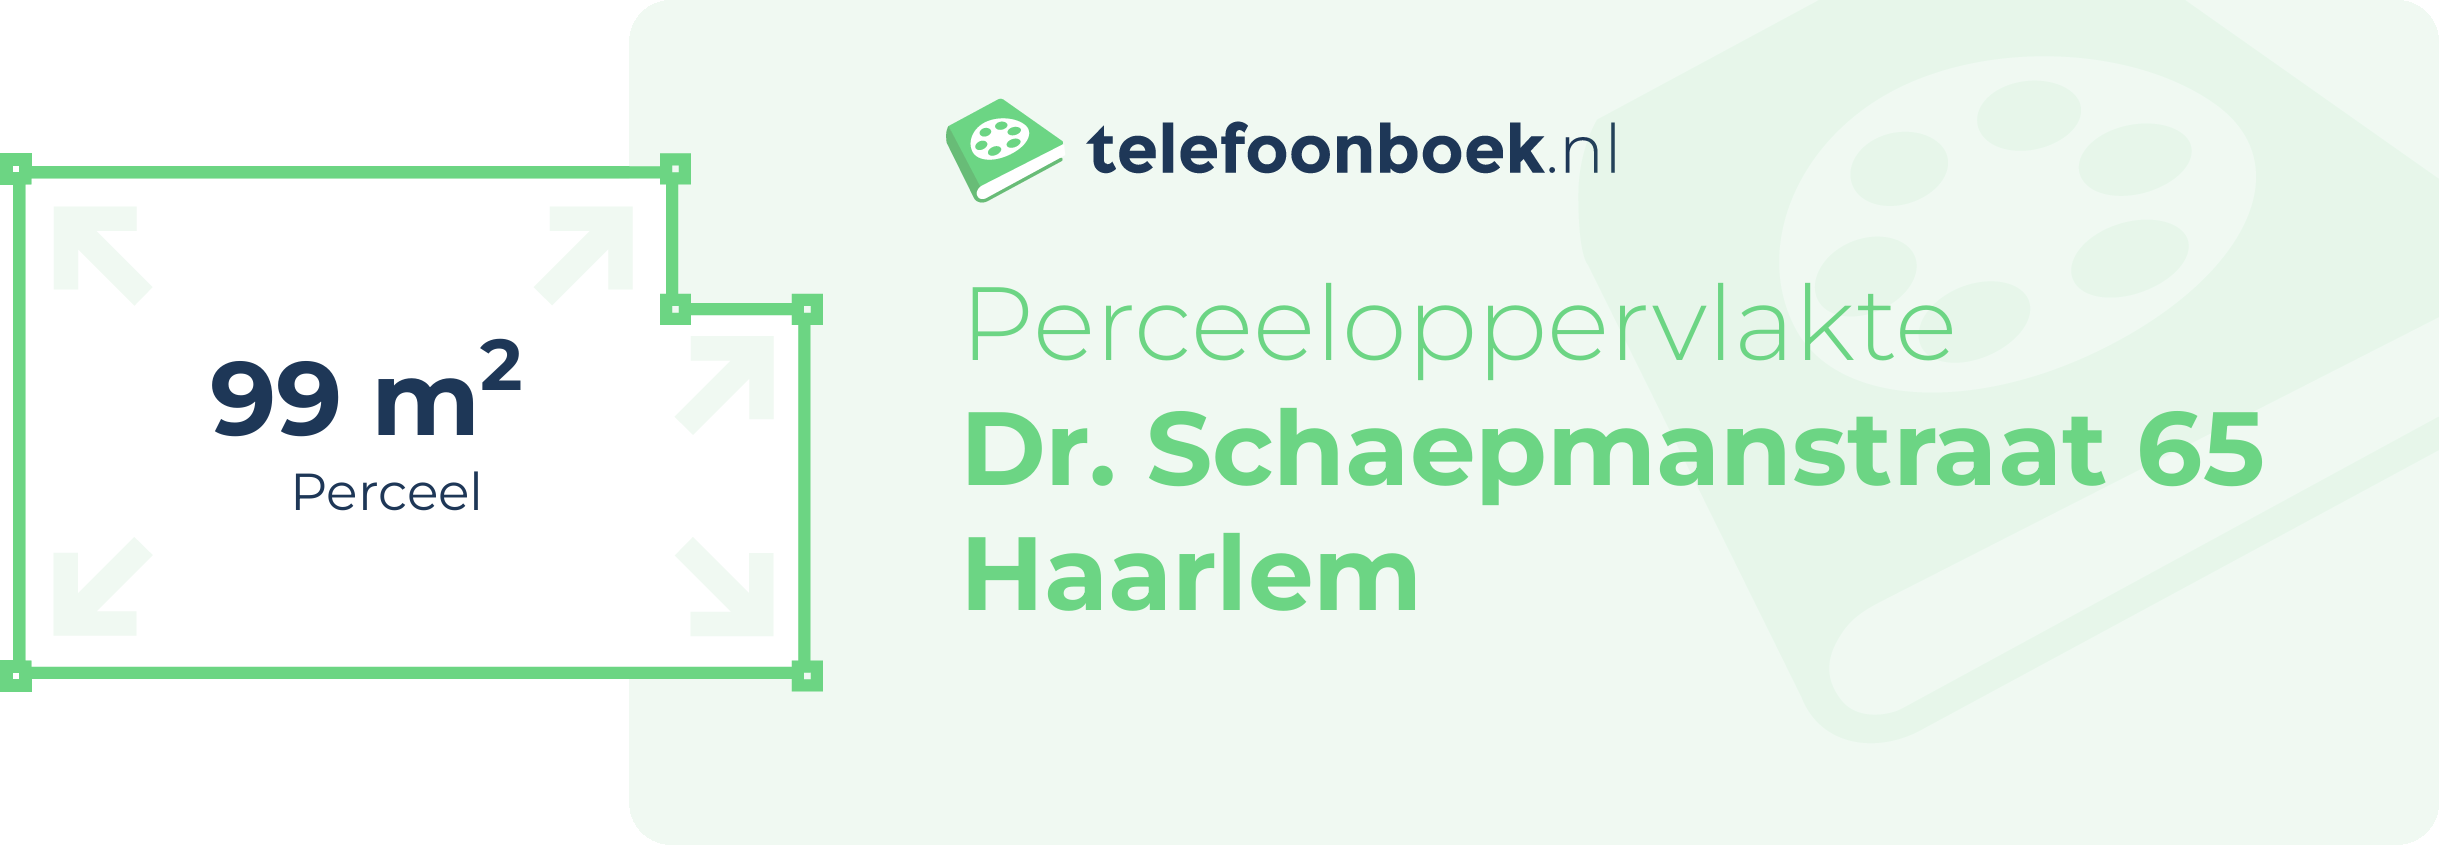 Perceeloppervlakte Dr. Schaepmanstraat 65 Haarlem